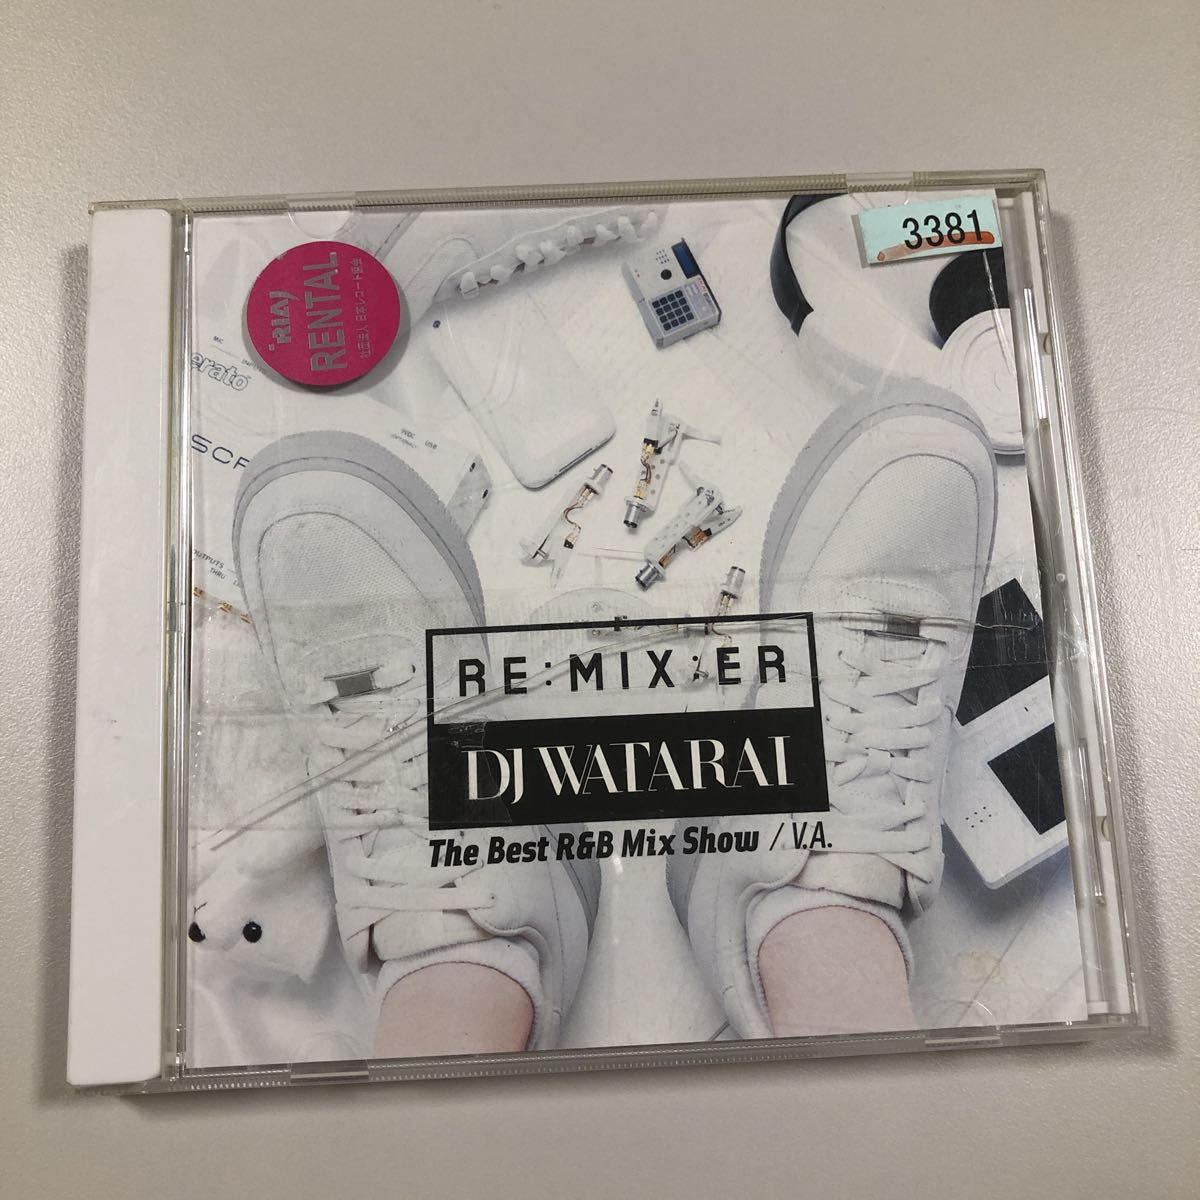 【21-10A】貴重なCDです！　RE:MIX:ER DJ WATARAI the best R&B mix show V.A._画像1